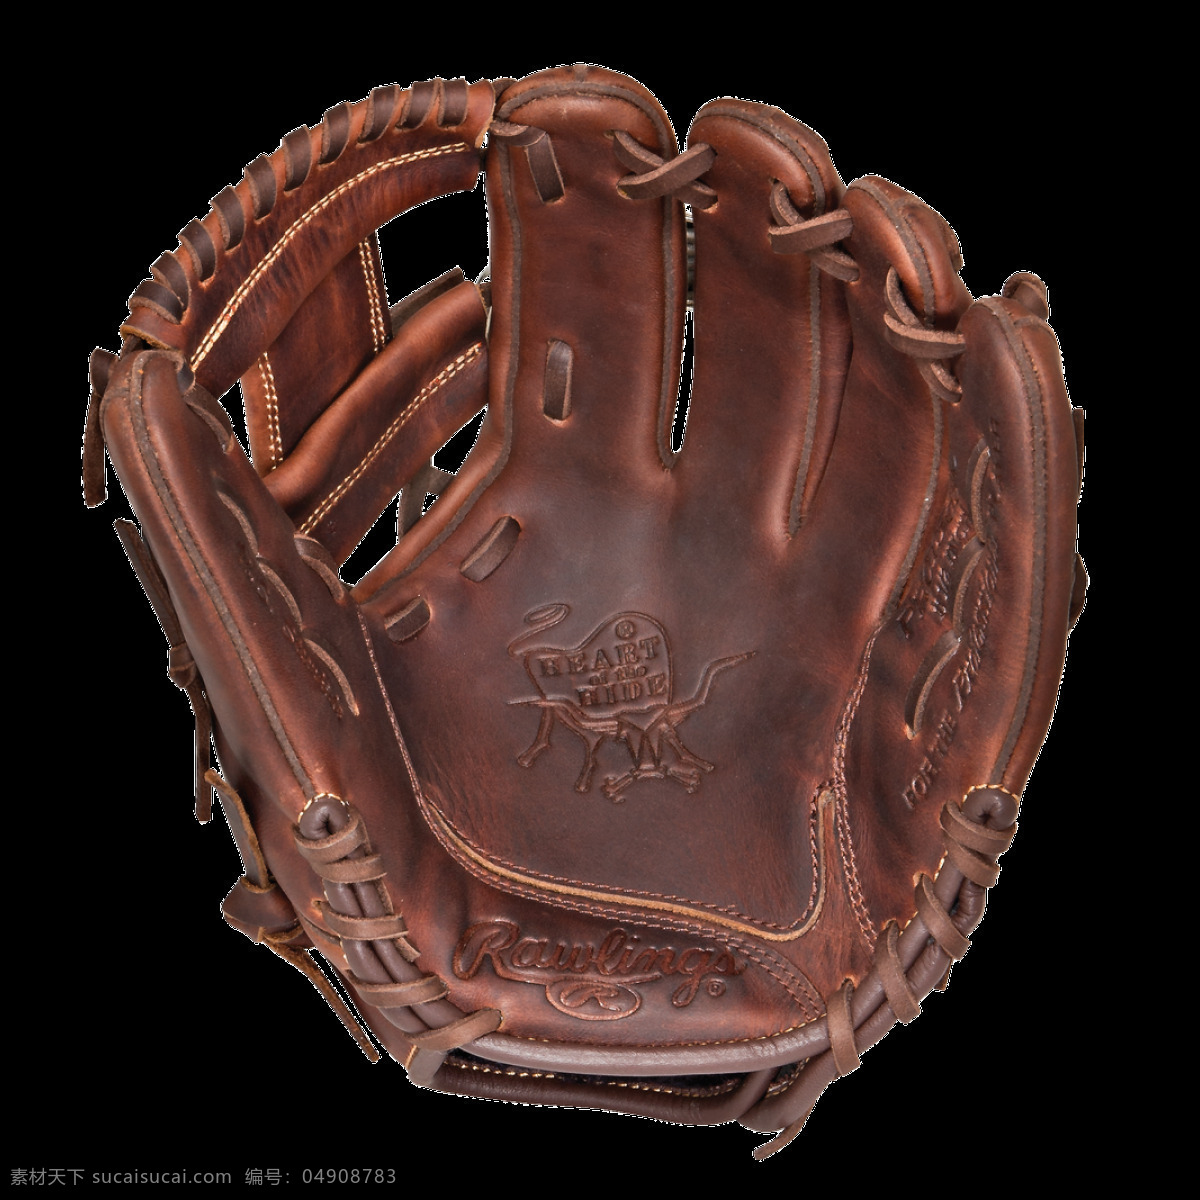 棒球 装备 手套 免 抠 透明 图 层 棒球素材 棒球比赛 棒球手套 棒球运动员 美国职业棒球 打棒球 棒球手 棒球海报 棒球简笔画 棒球棒 棒球图片 棒球器材 棒球元素 棒球装备